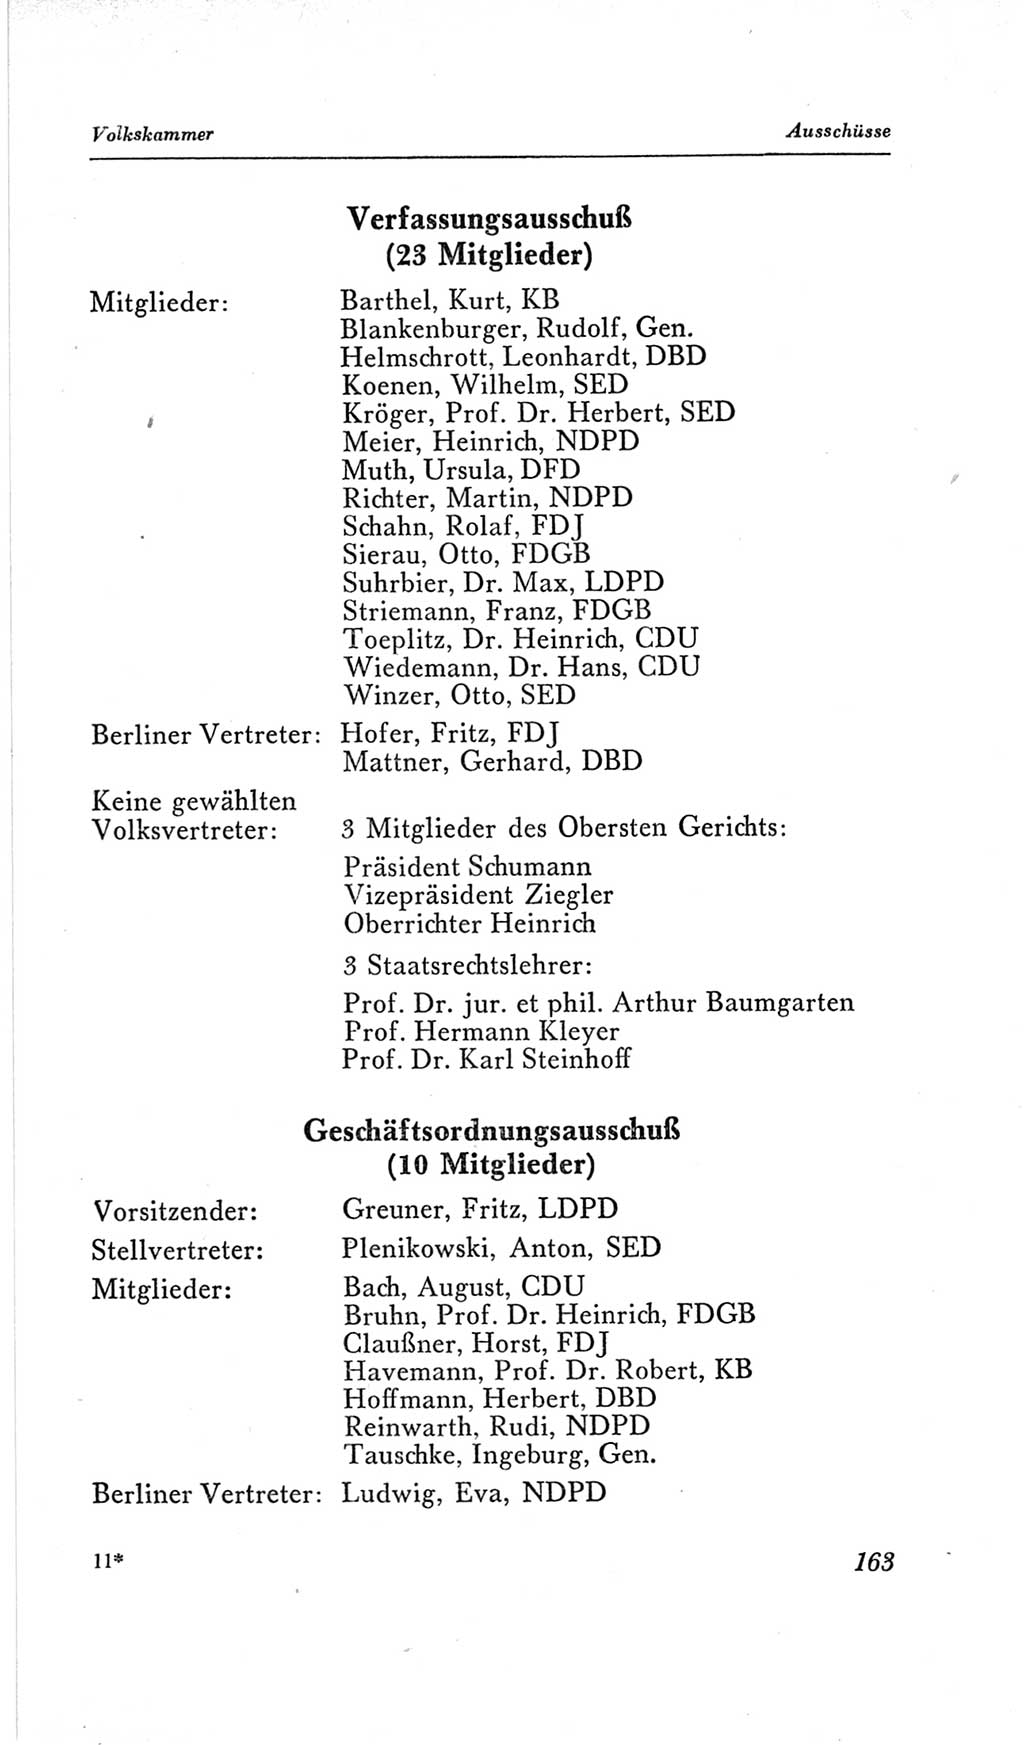 Handbuch der Volkskammer (VK) der Deutschen Demokratischen Republik (DDR), 2. Wahlperiode 1954-1958, Seite 163 (Hdb. VK. DDR, 2. WP. 1954-1958, S. 163)